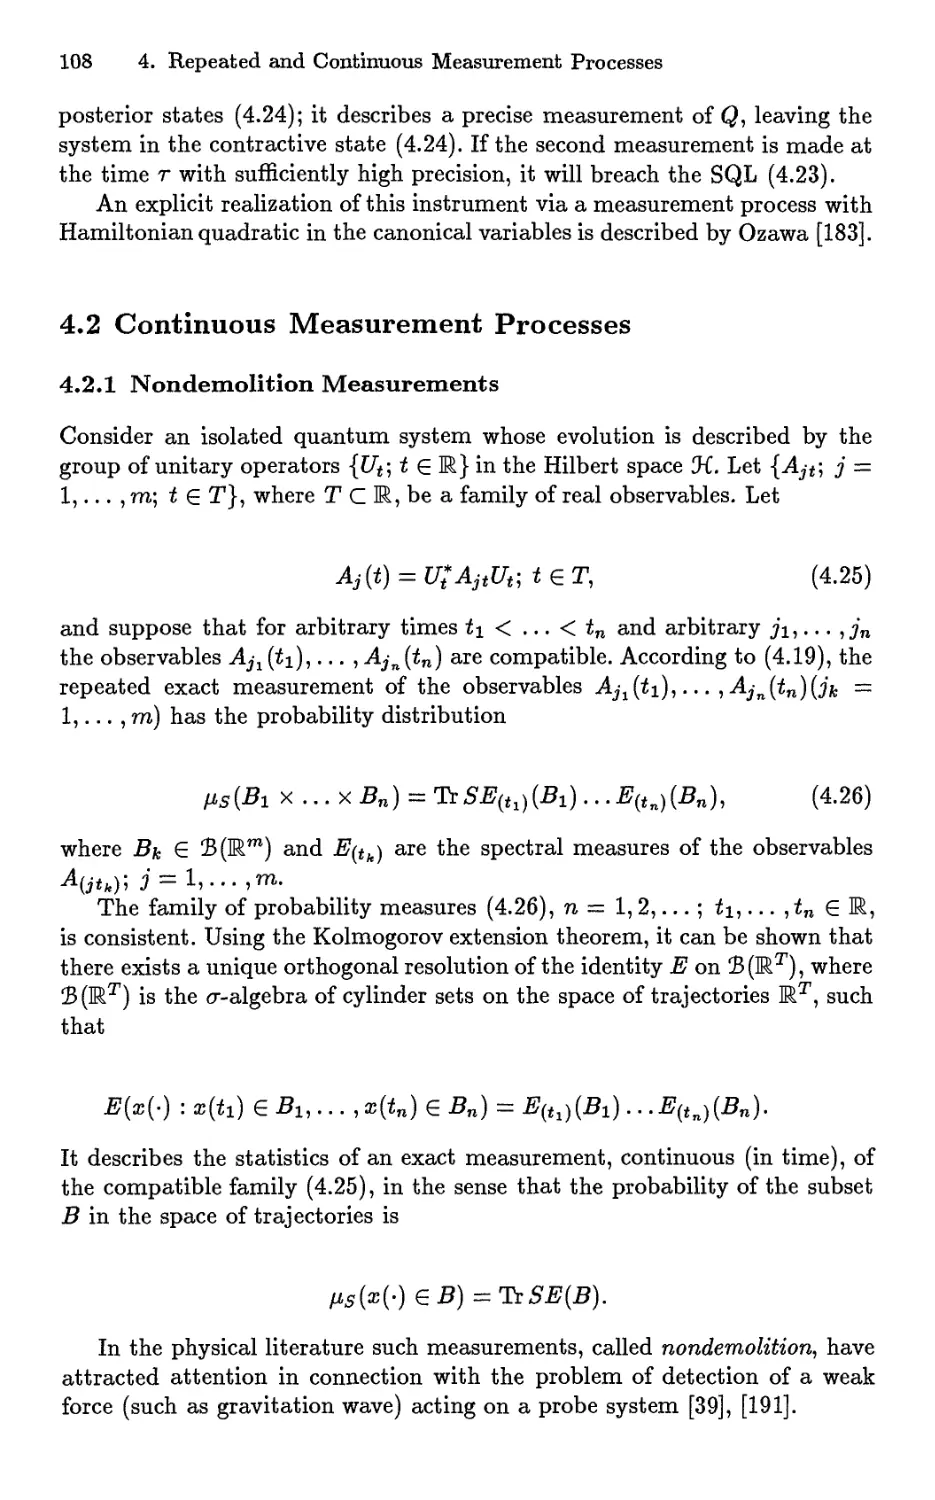 4.2 Continuous Measurement Processes